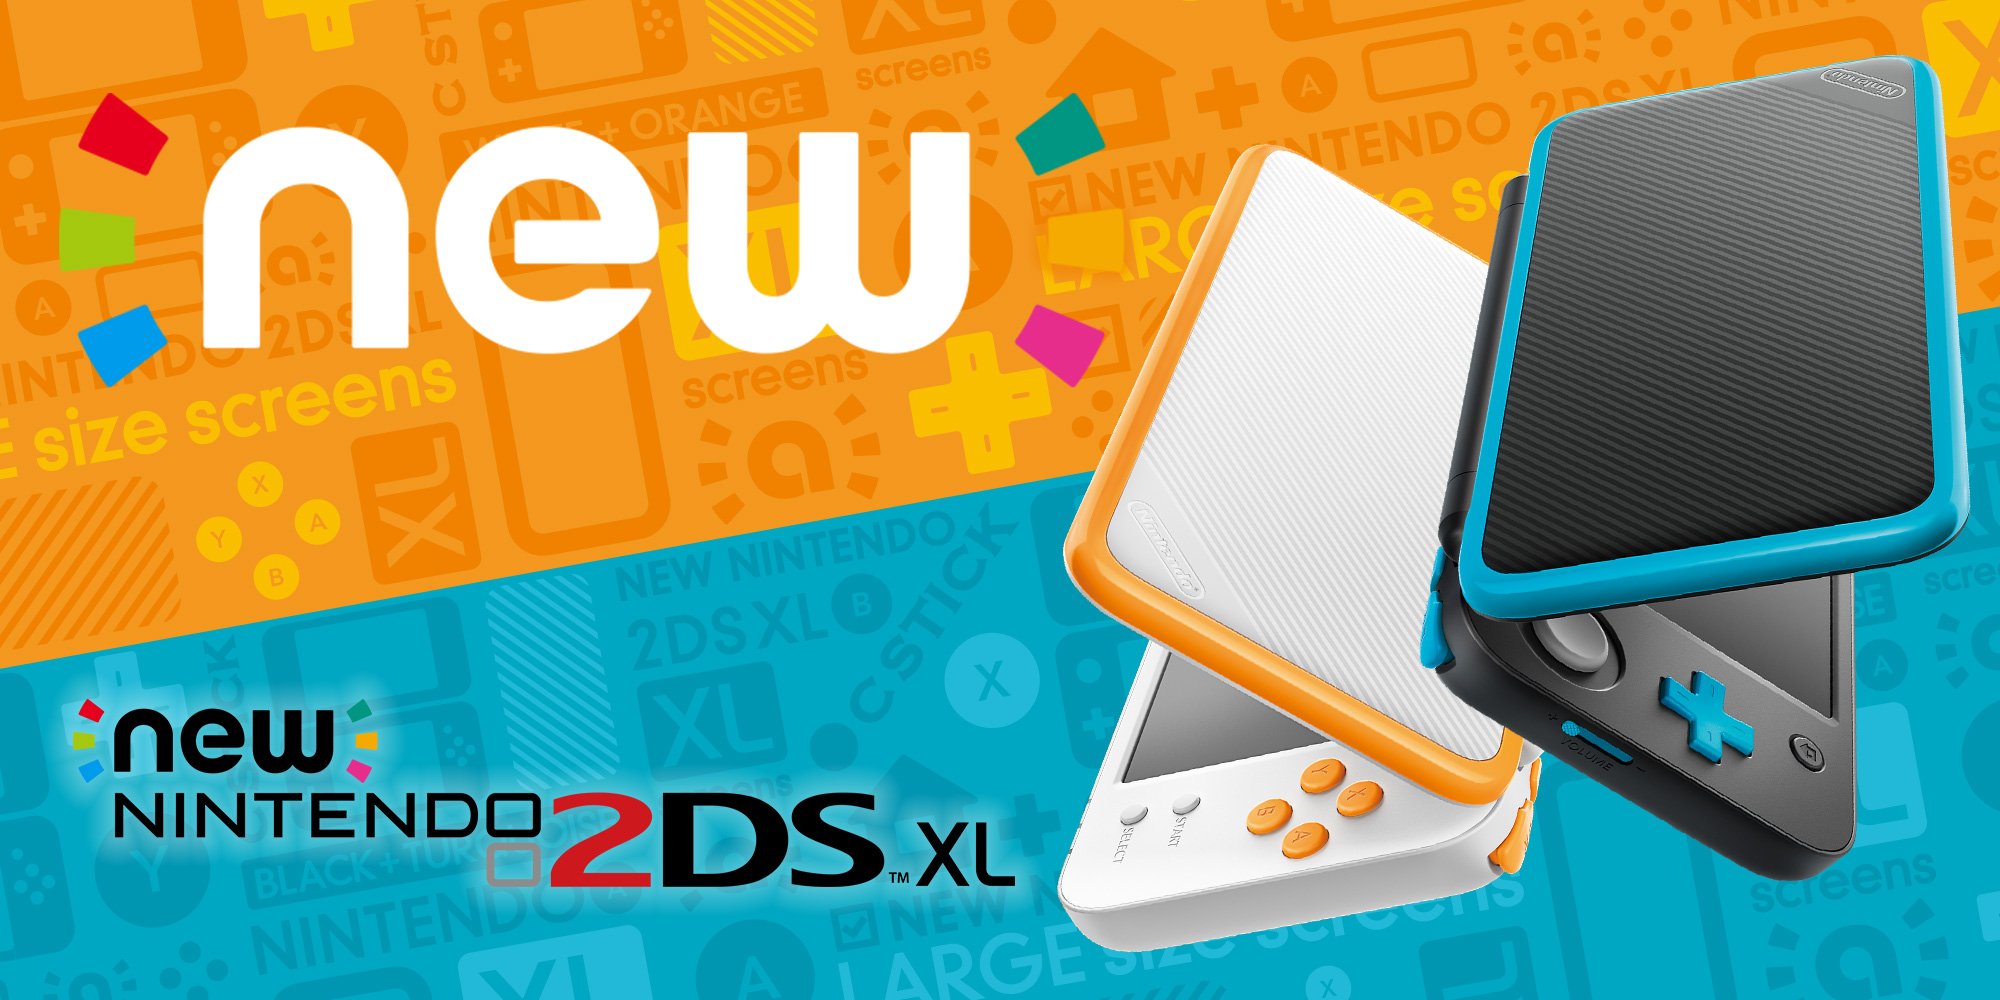 Le 28 juillet, Nintendo va lancer une nouvelle console portable, la New Nintendo 2DS XL